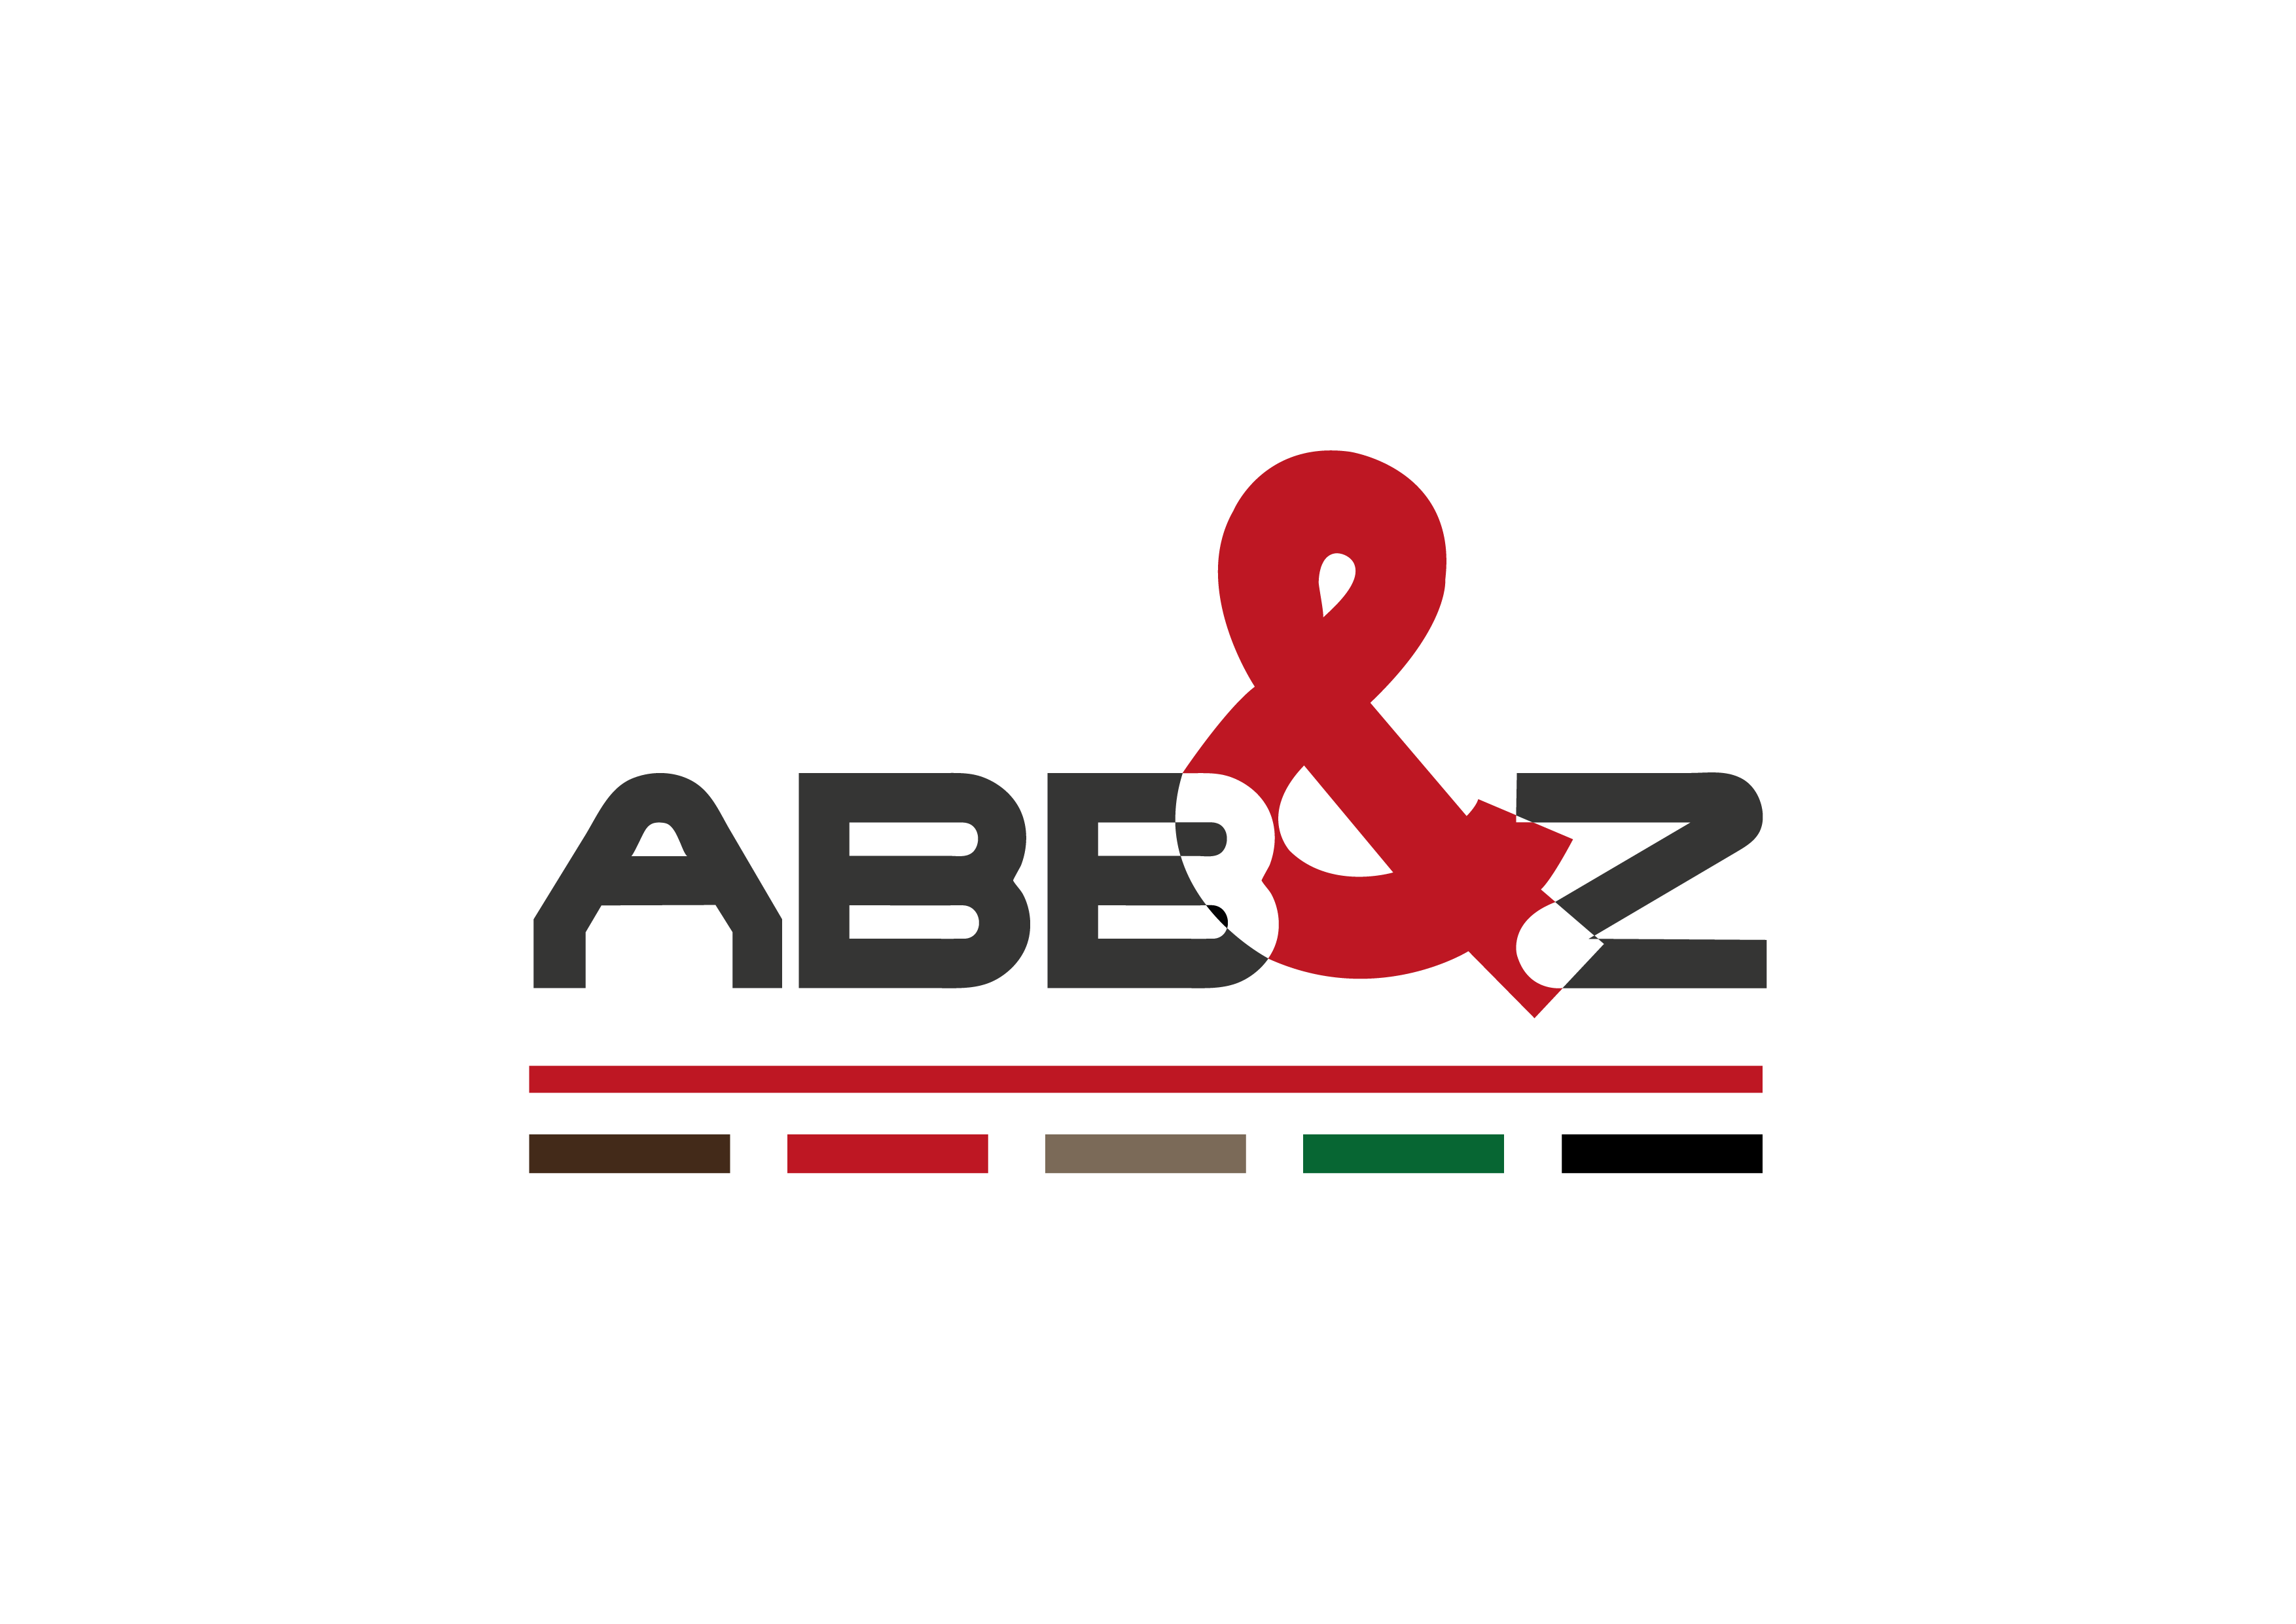 ABB-Z restauratie aannemer